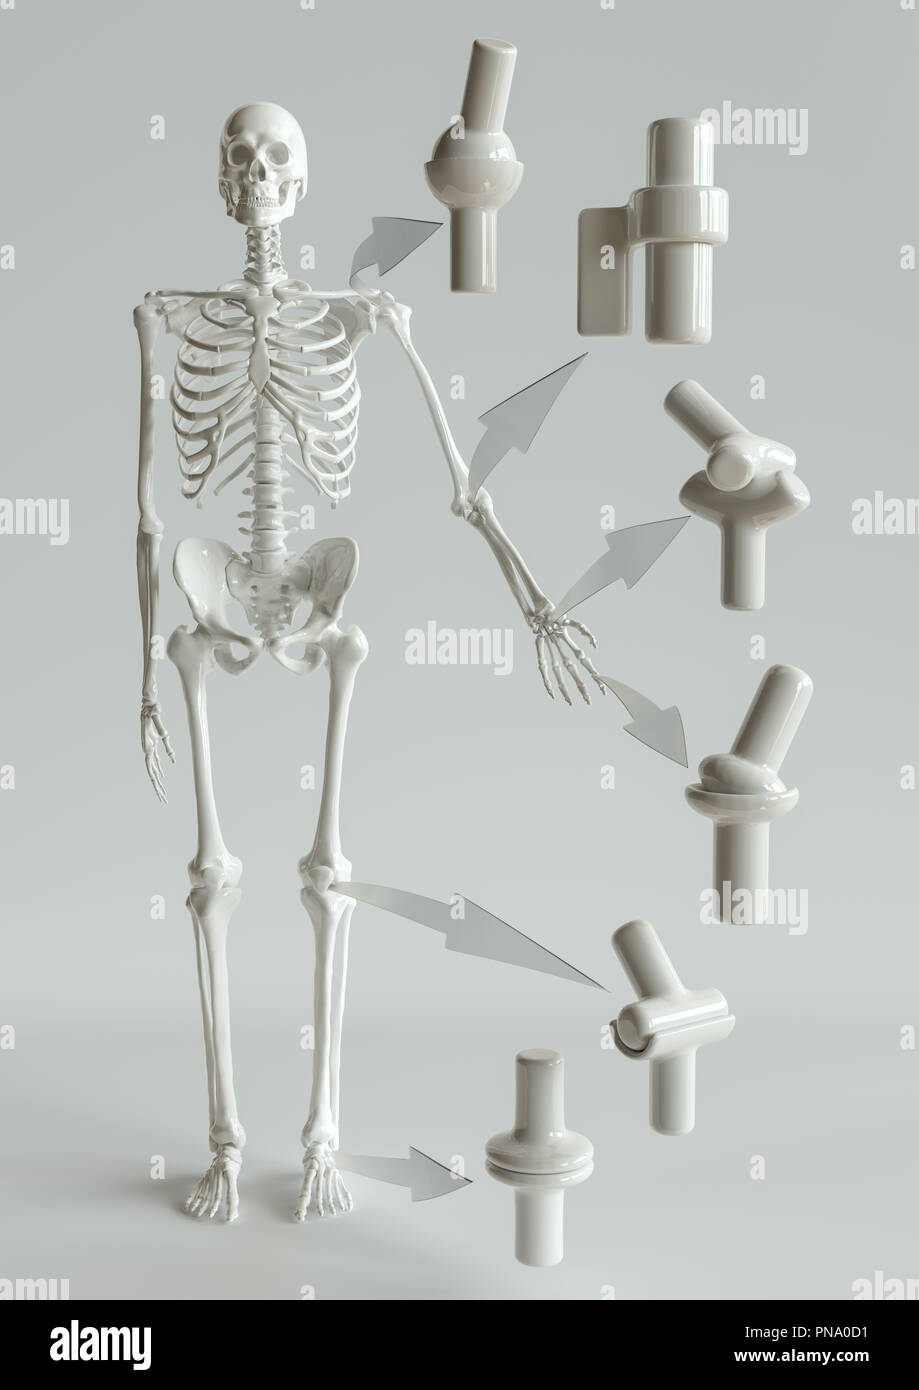 Gemeinsame Arten auf das menschliche Skelett - 3D-Rendering Stockfoto